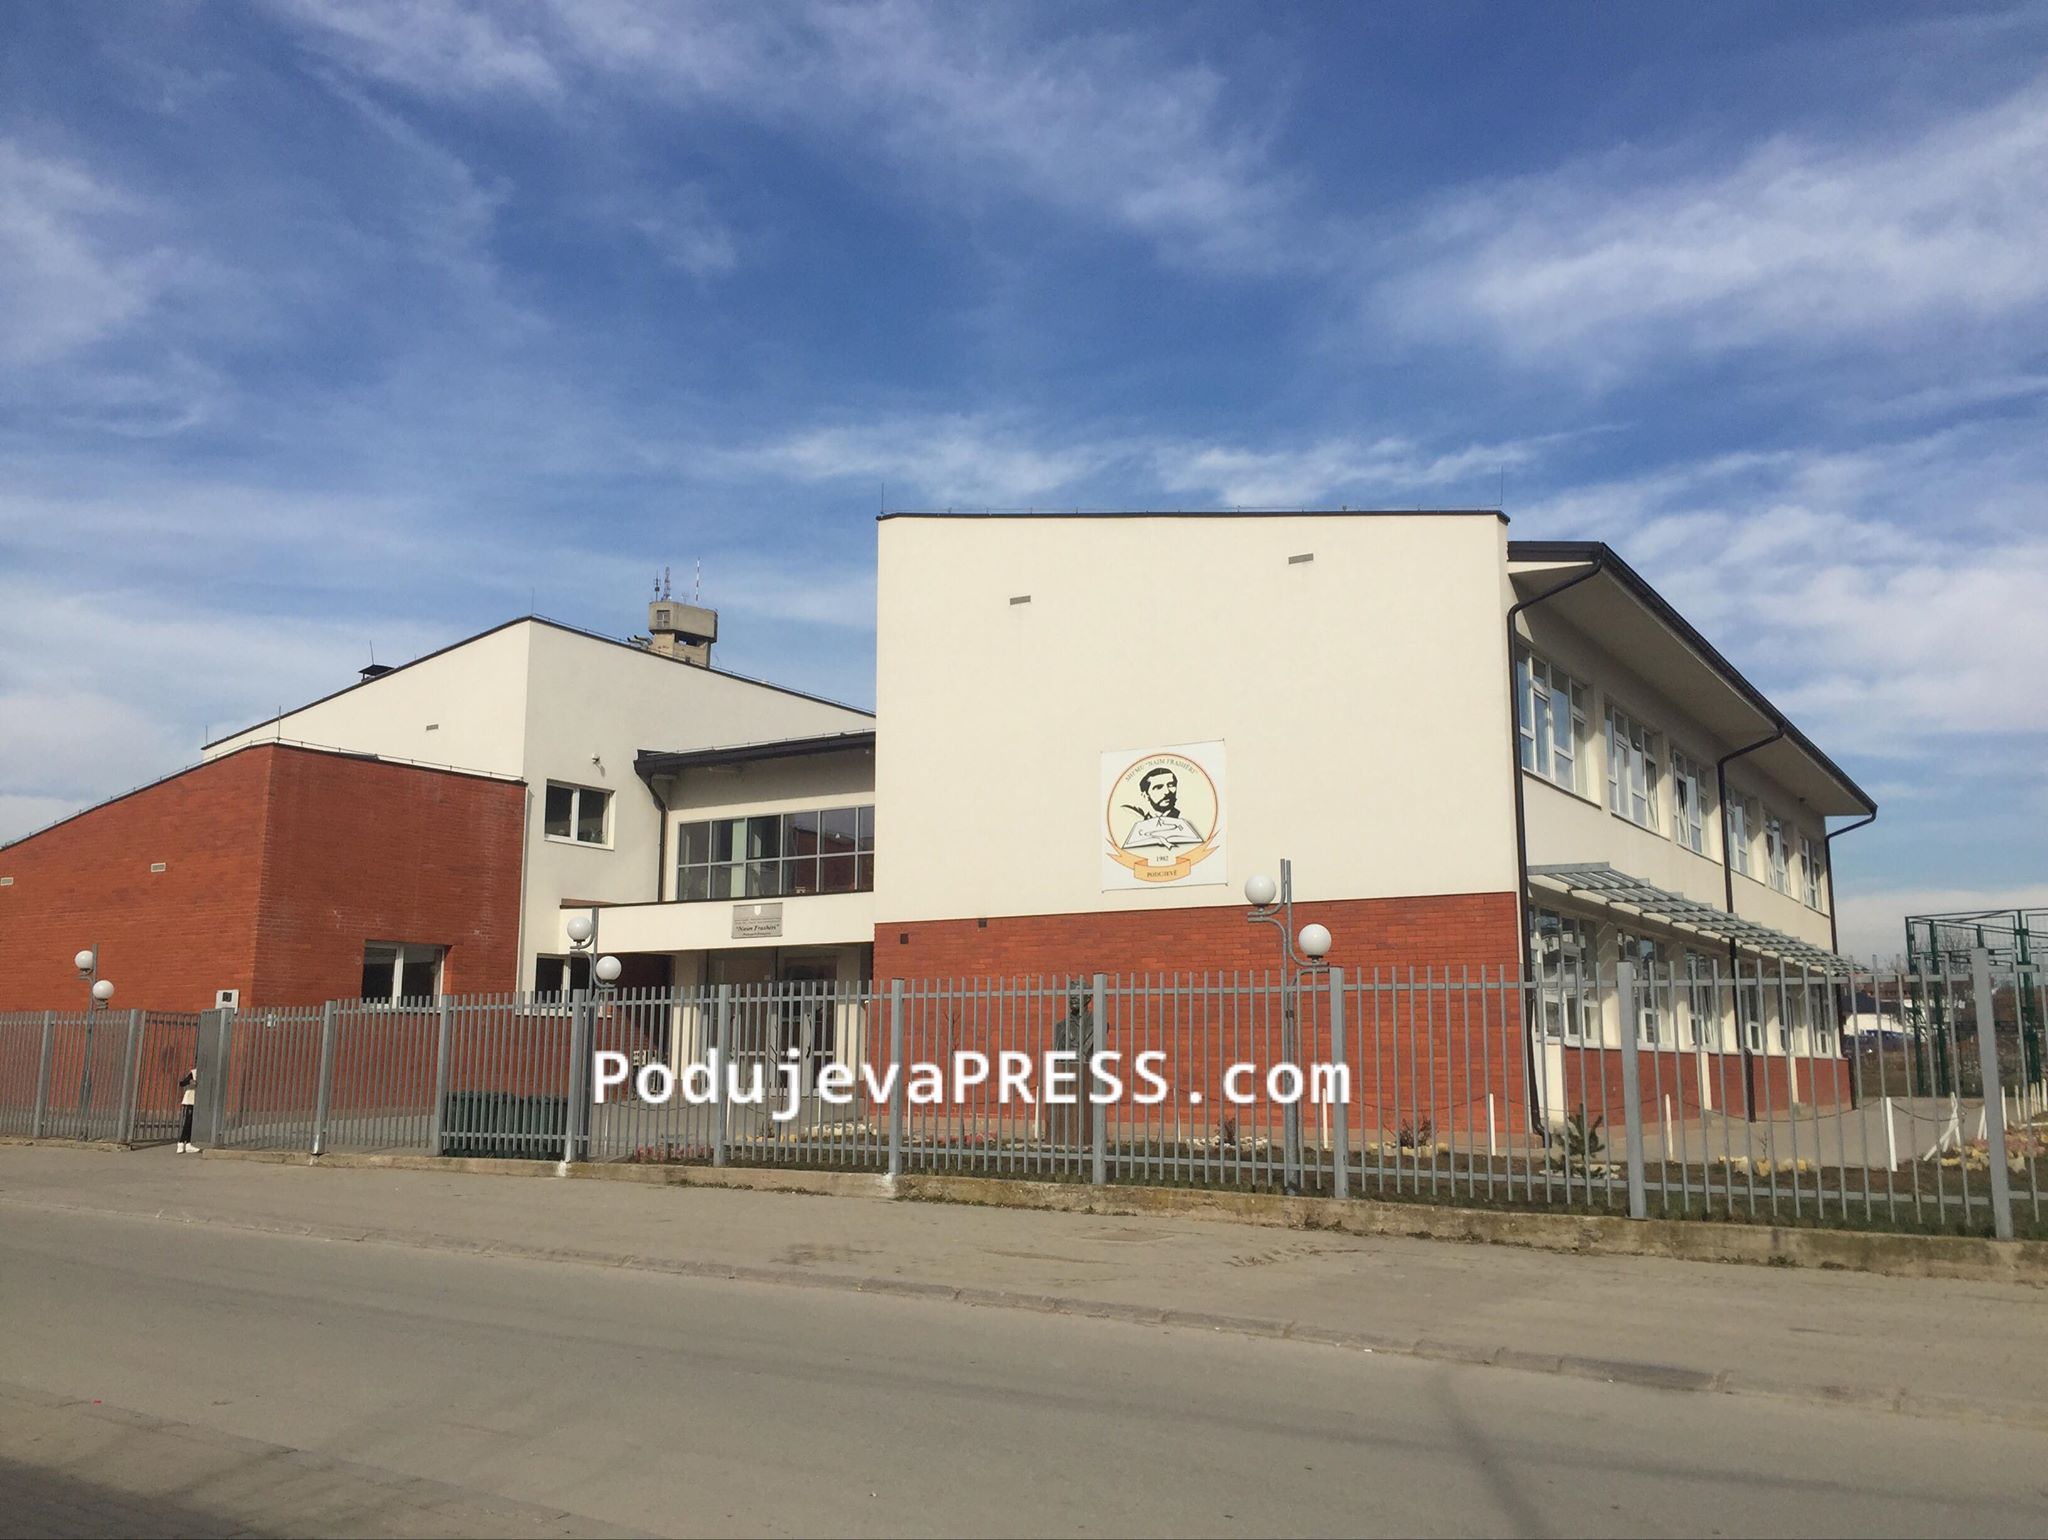  Dezinfektimi i vazhdueshëm i shkollave në Podujevë, problem për komunën